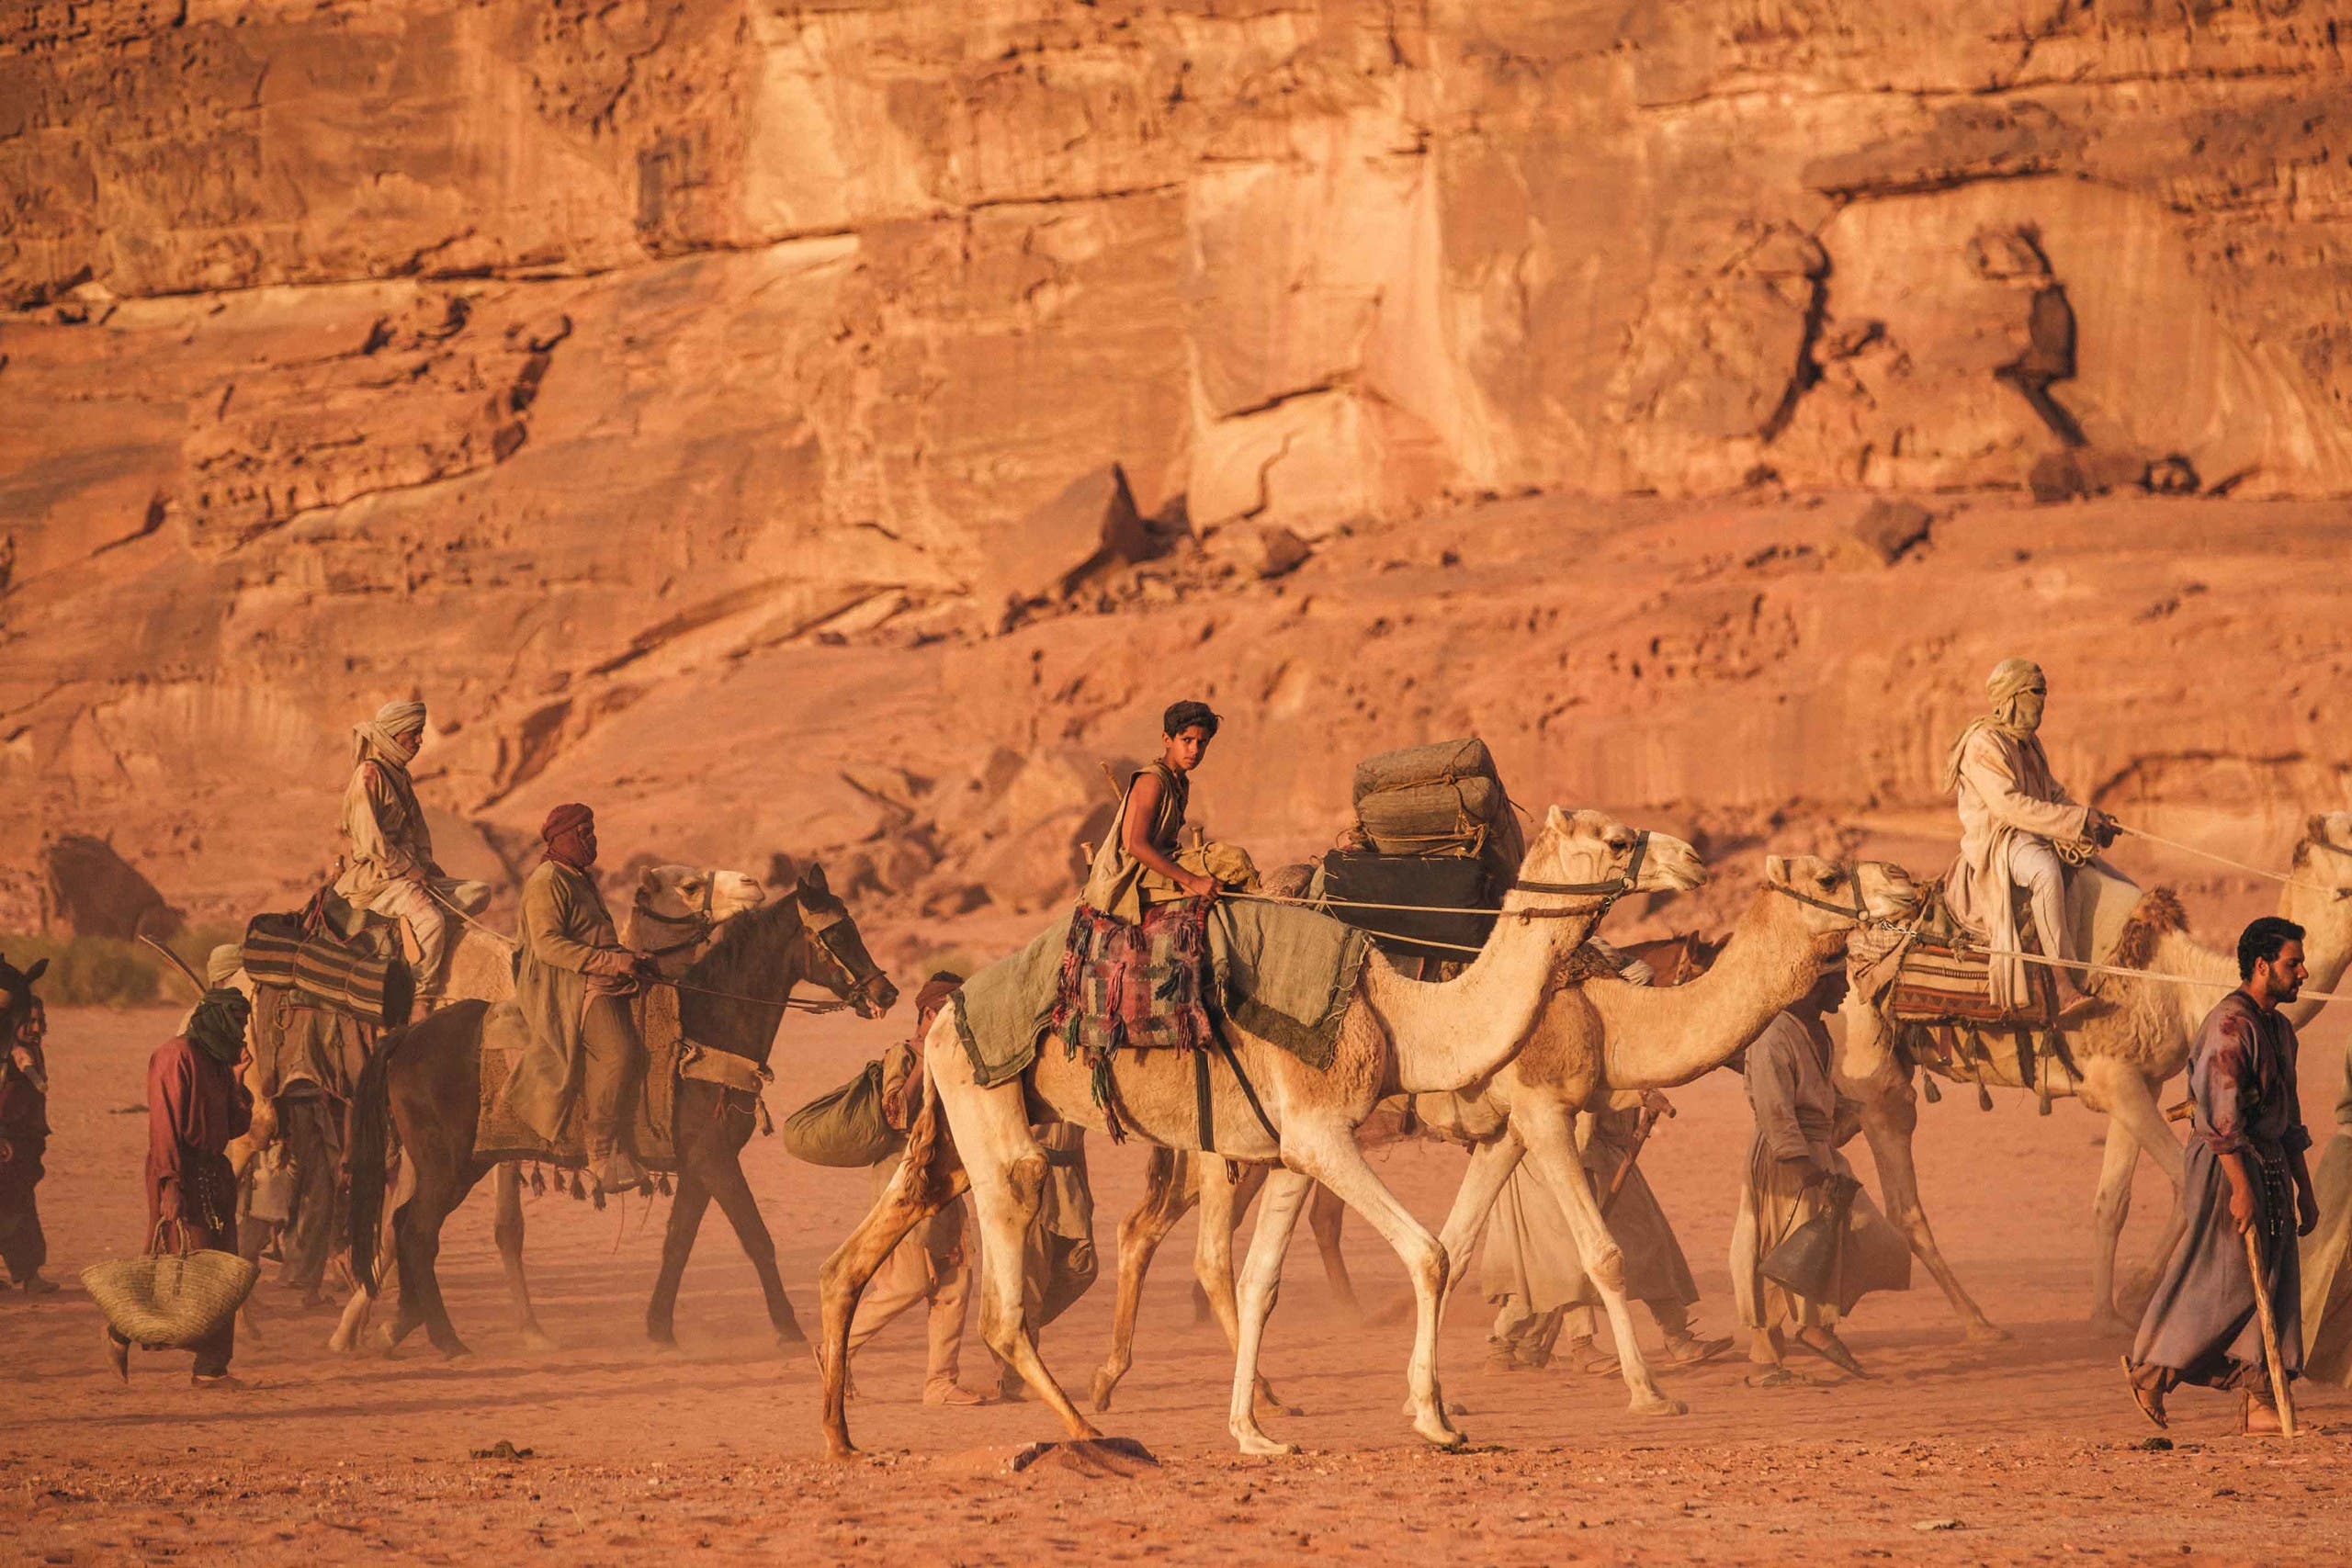 من موقع تصوير "محارب الصحراء"